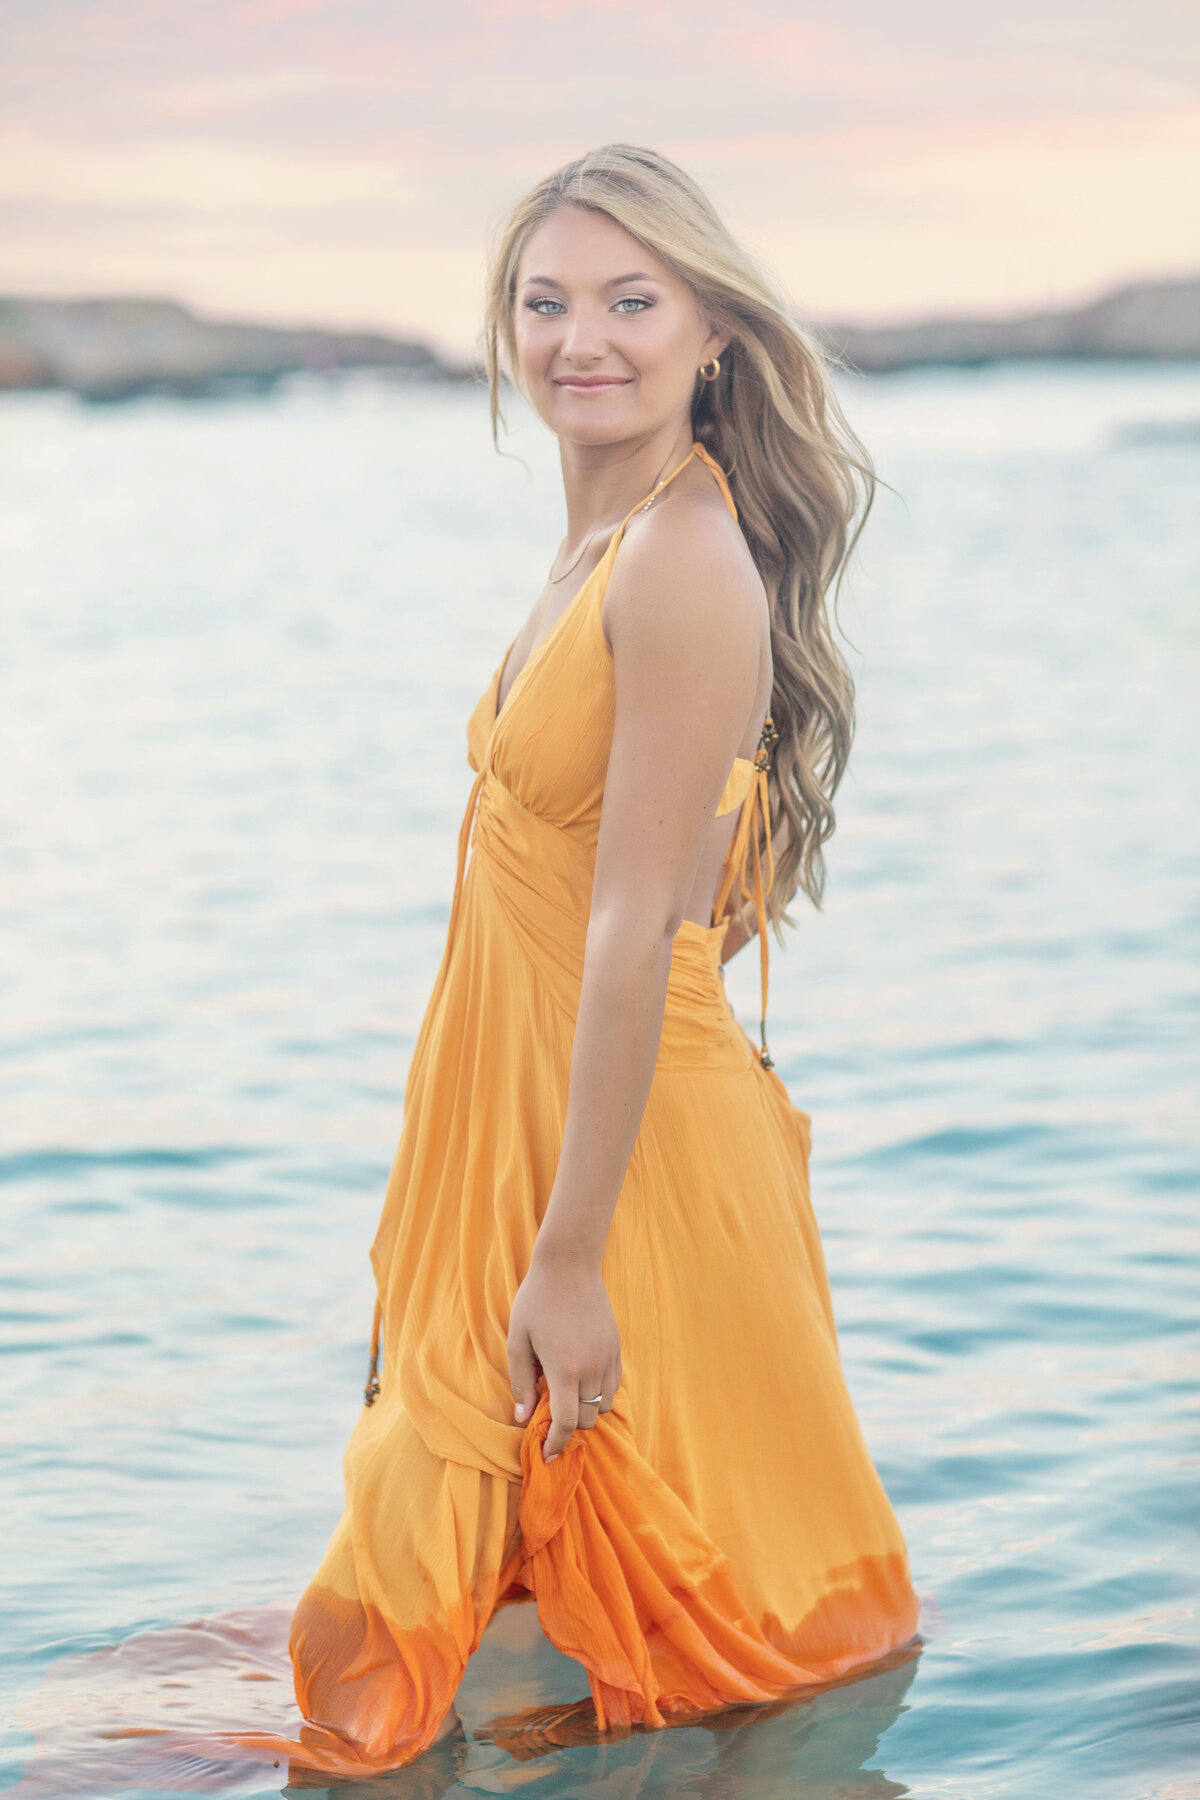 high school senior portrait in water - Kristen Zannella Photography